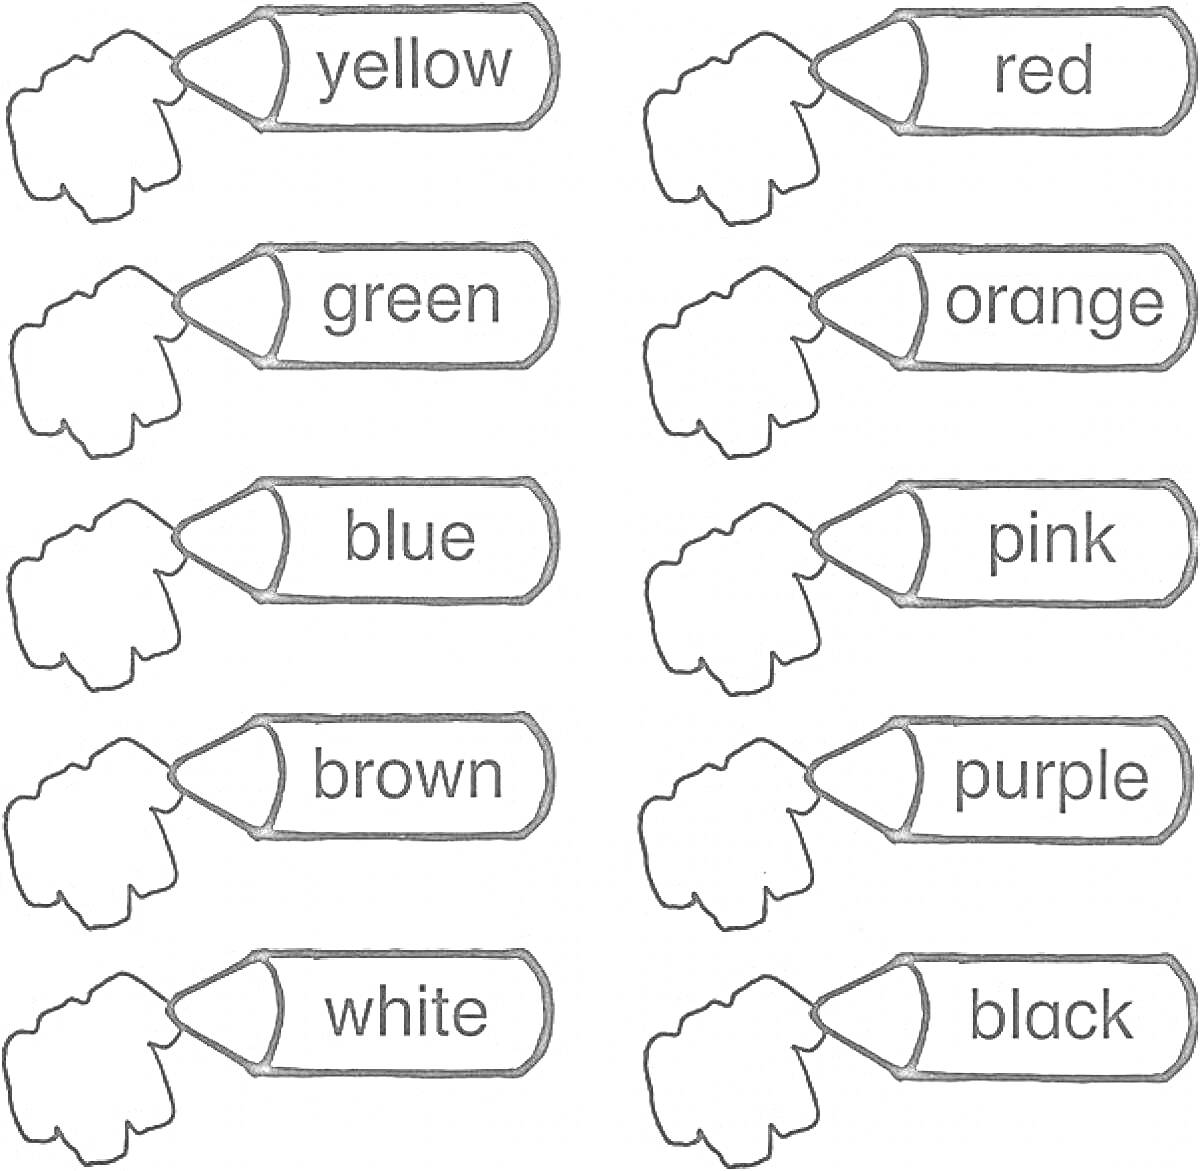 Карандаши с названиями цветов на английском языке